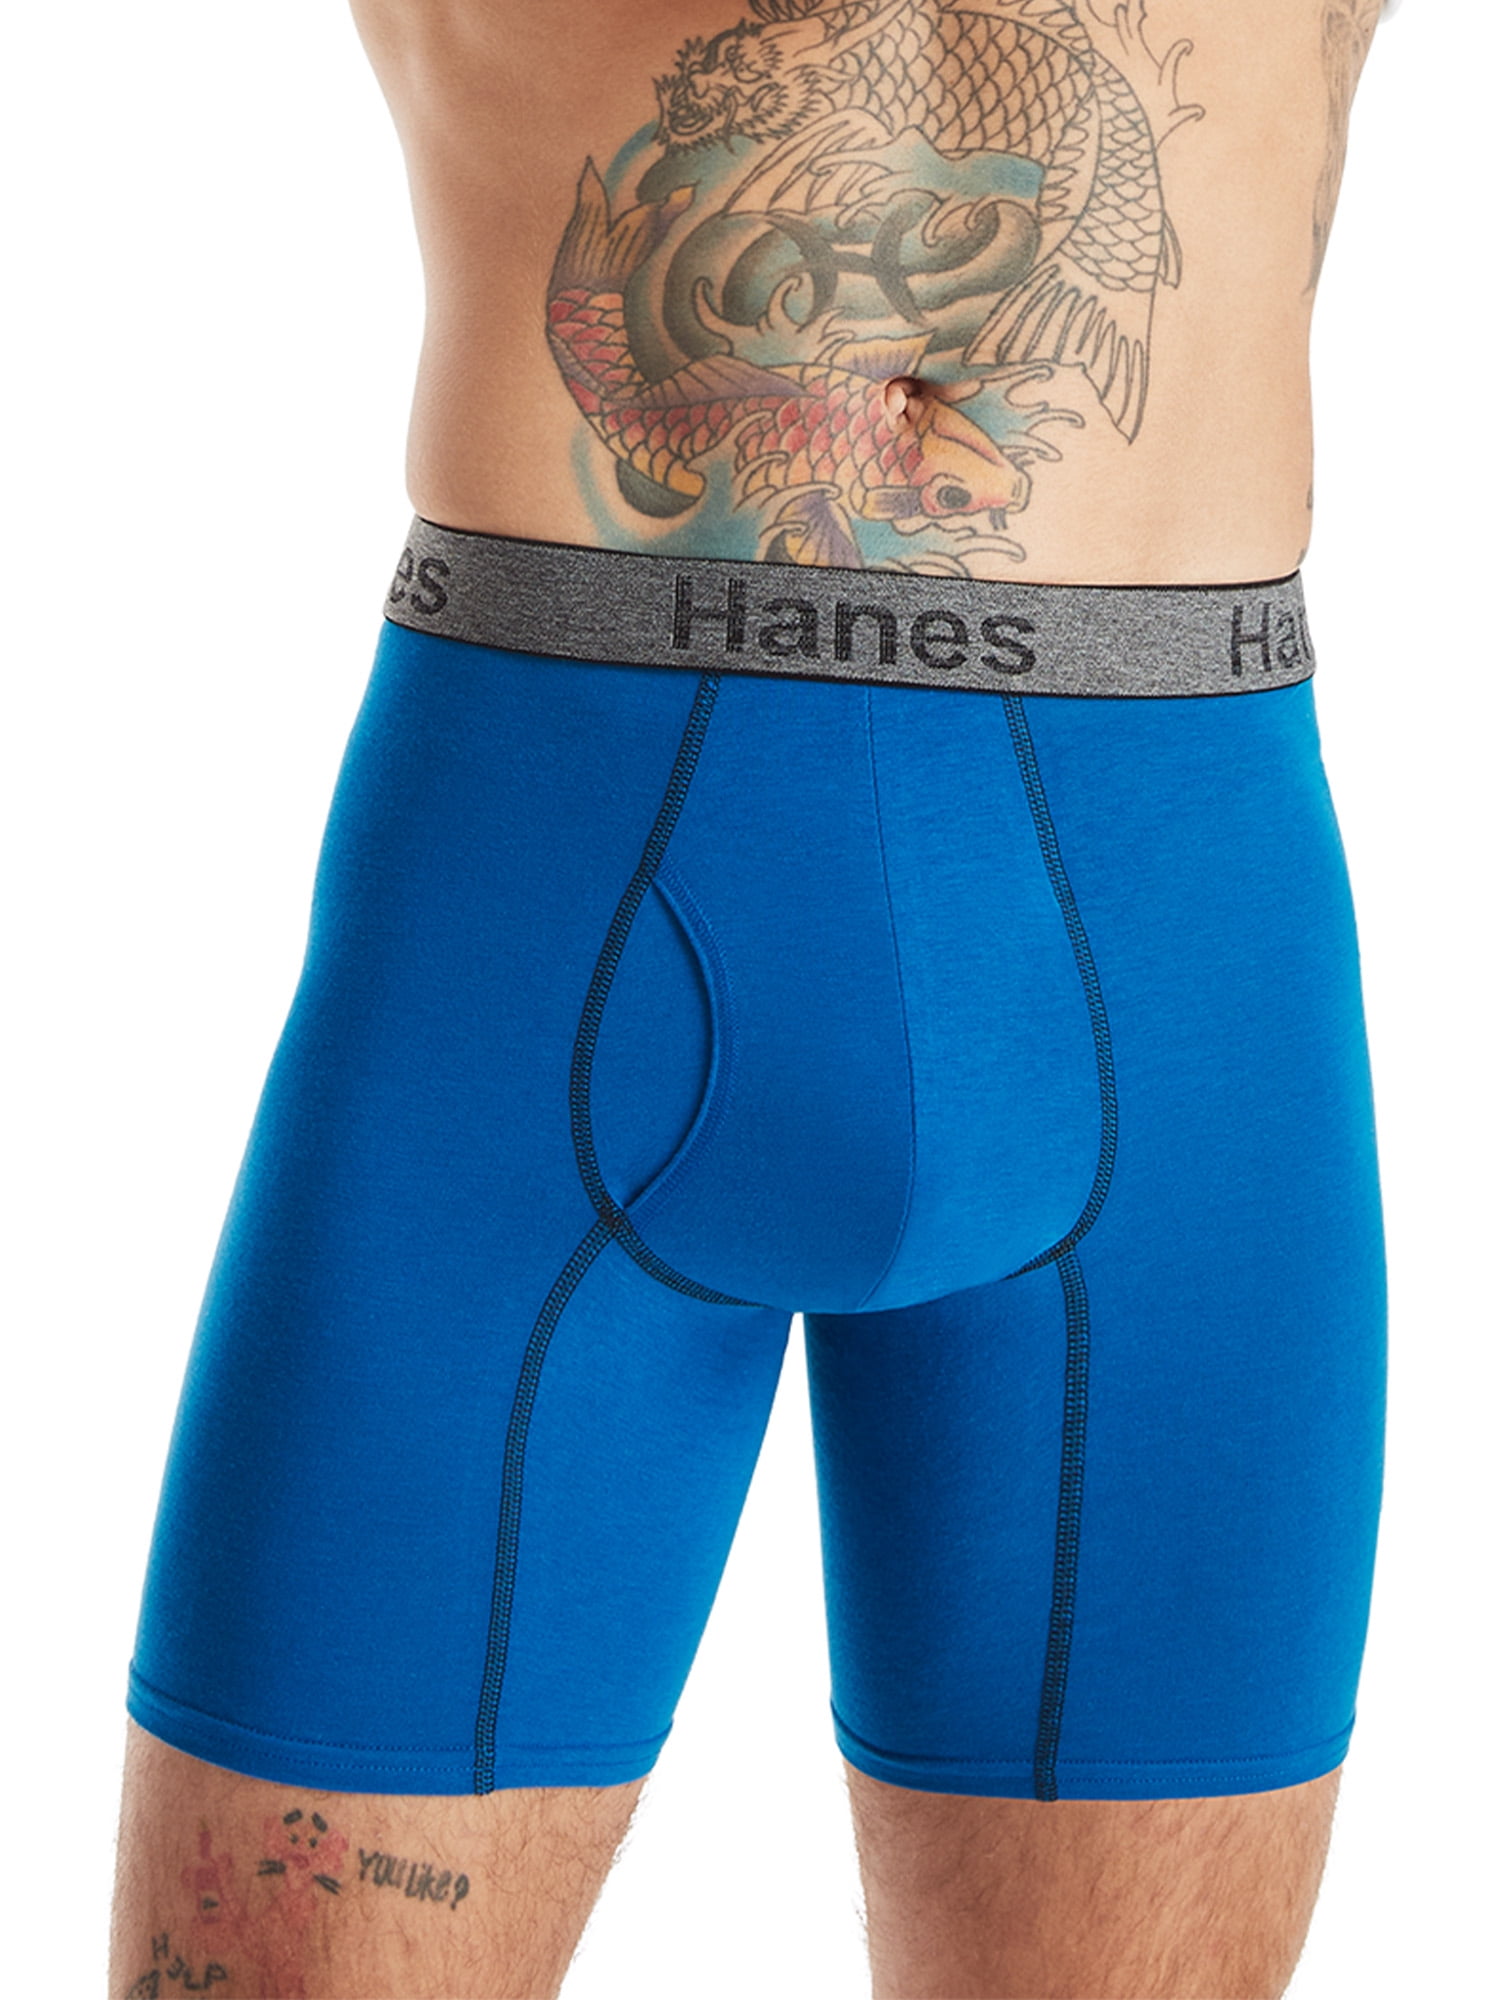 Hanes Men's Comfort Flex Fit Ultra Soft Cotton Stretch Long Leg Boxer  Briefs 3-Pack - CFFLC3